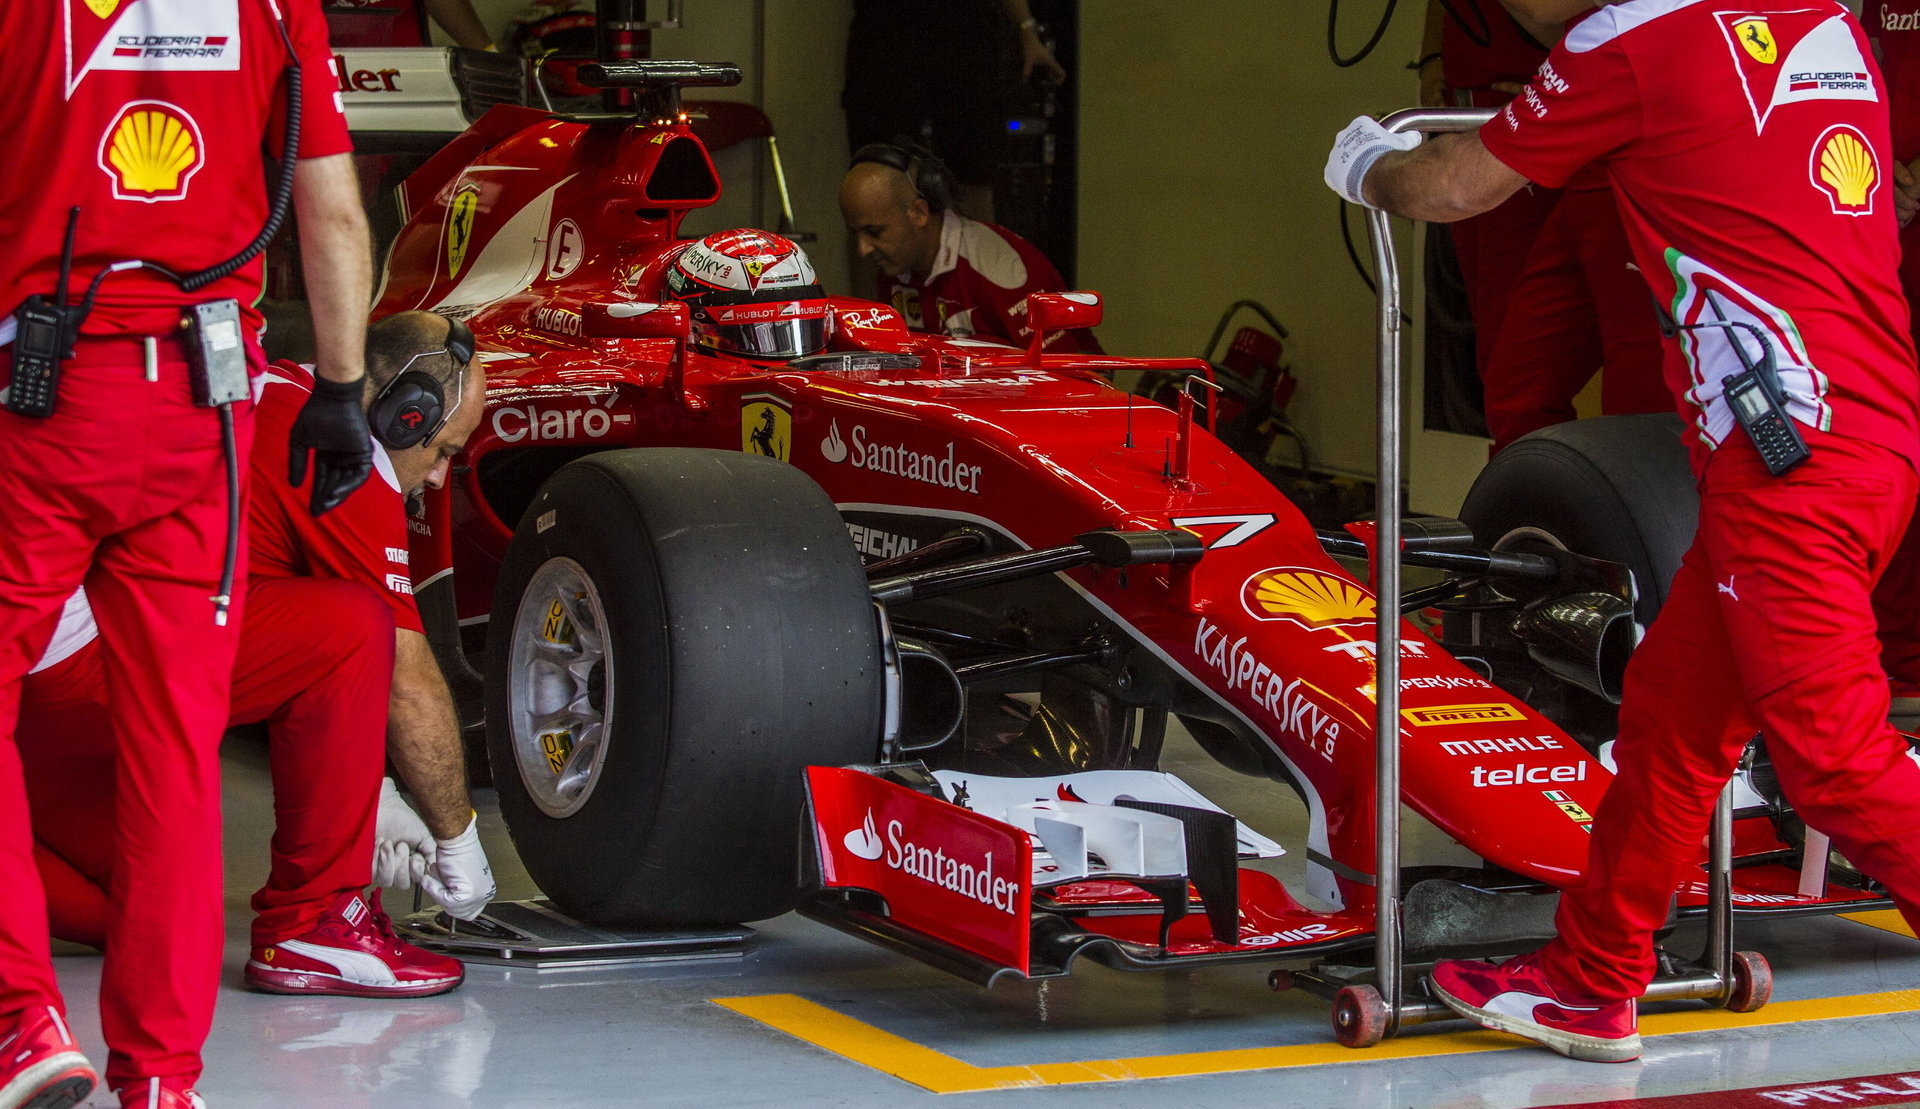 Ferrari při testu širších pneumatik Pirelli pro sezónu 2017